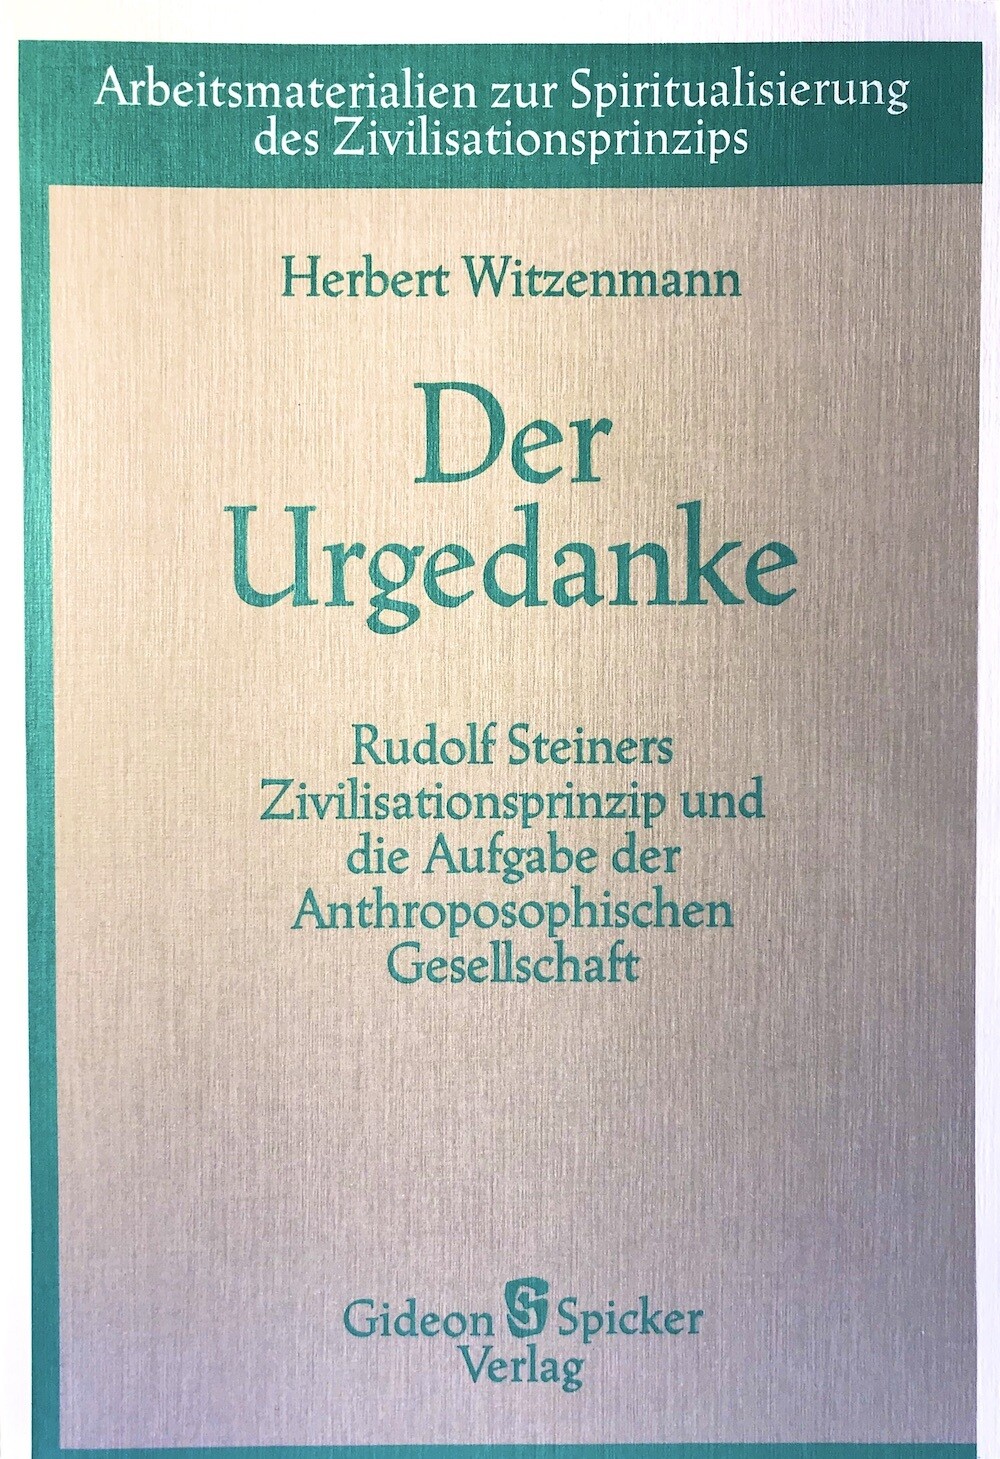 Herbert Witzenmann: Der Urgedanke (1988)